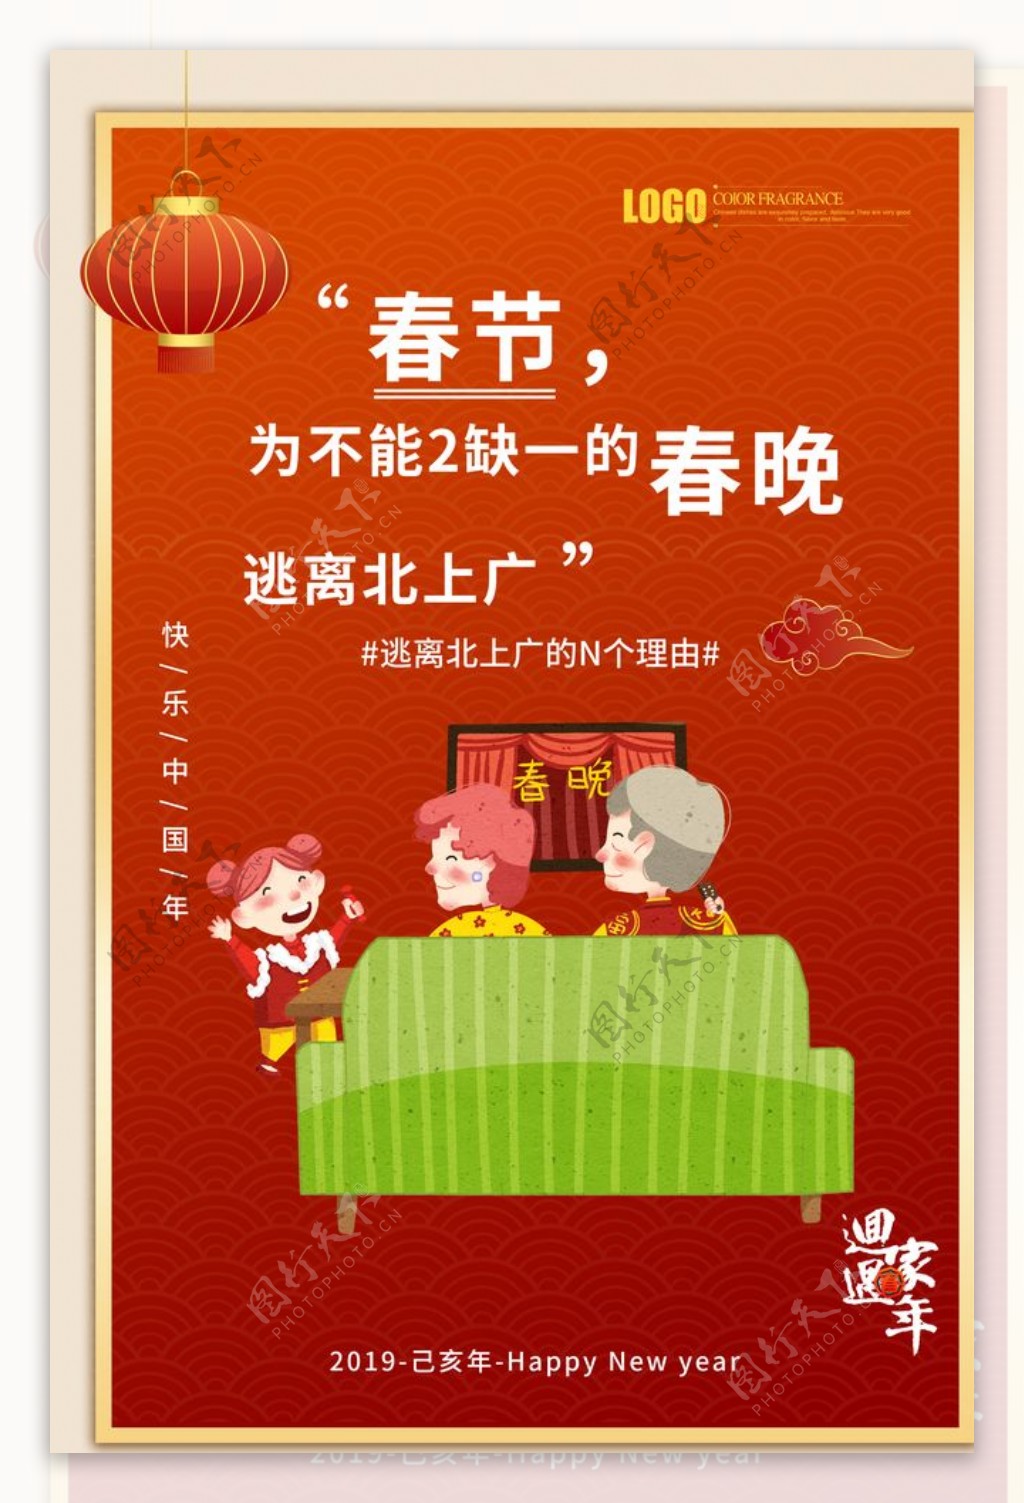 红色大气中国风春节回家过年海报